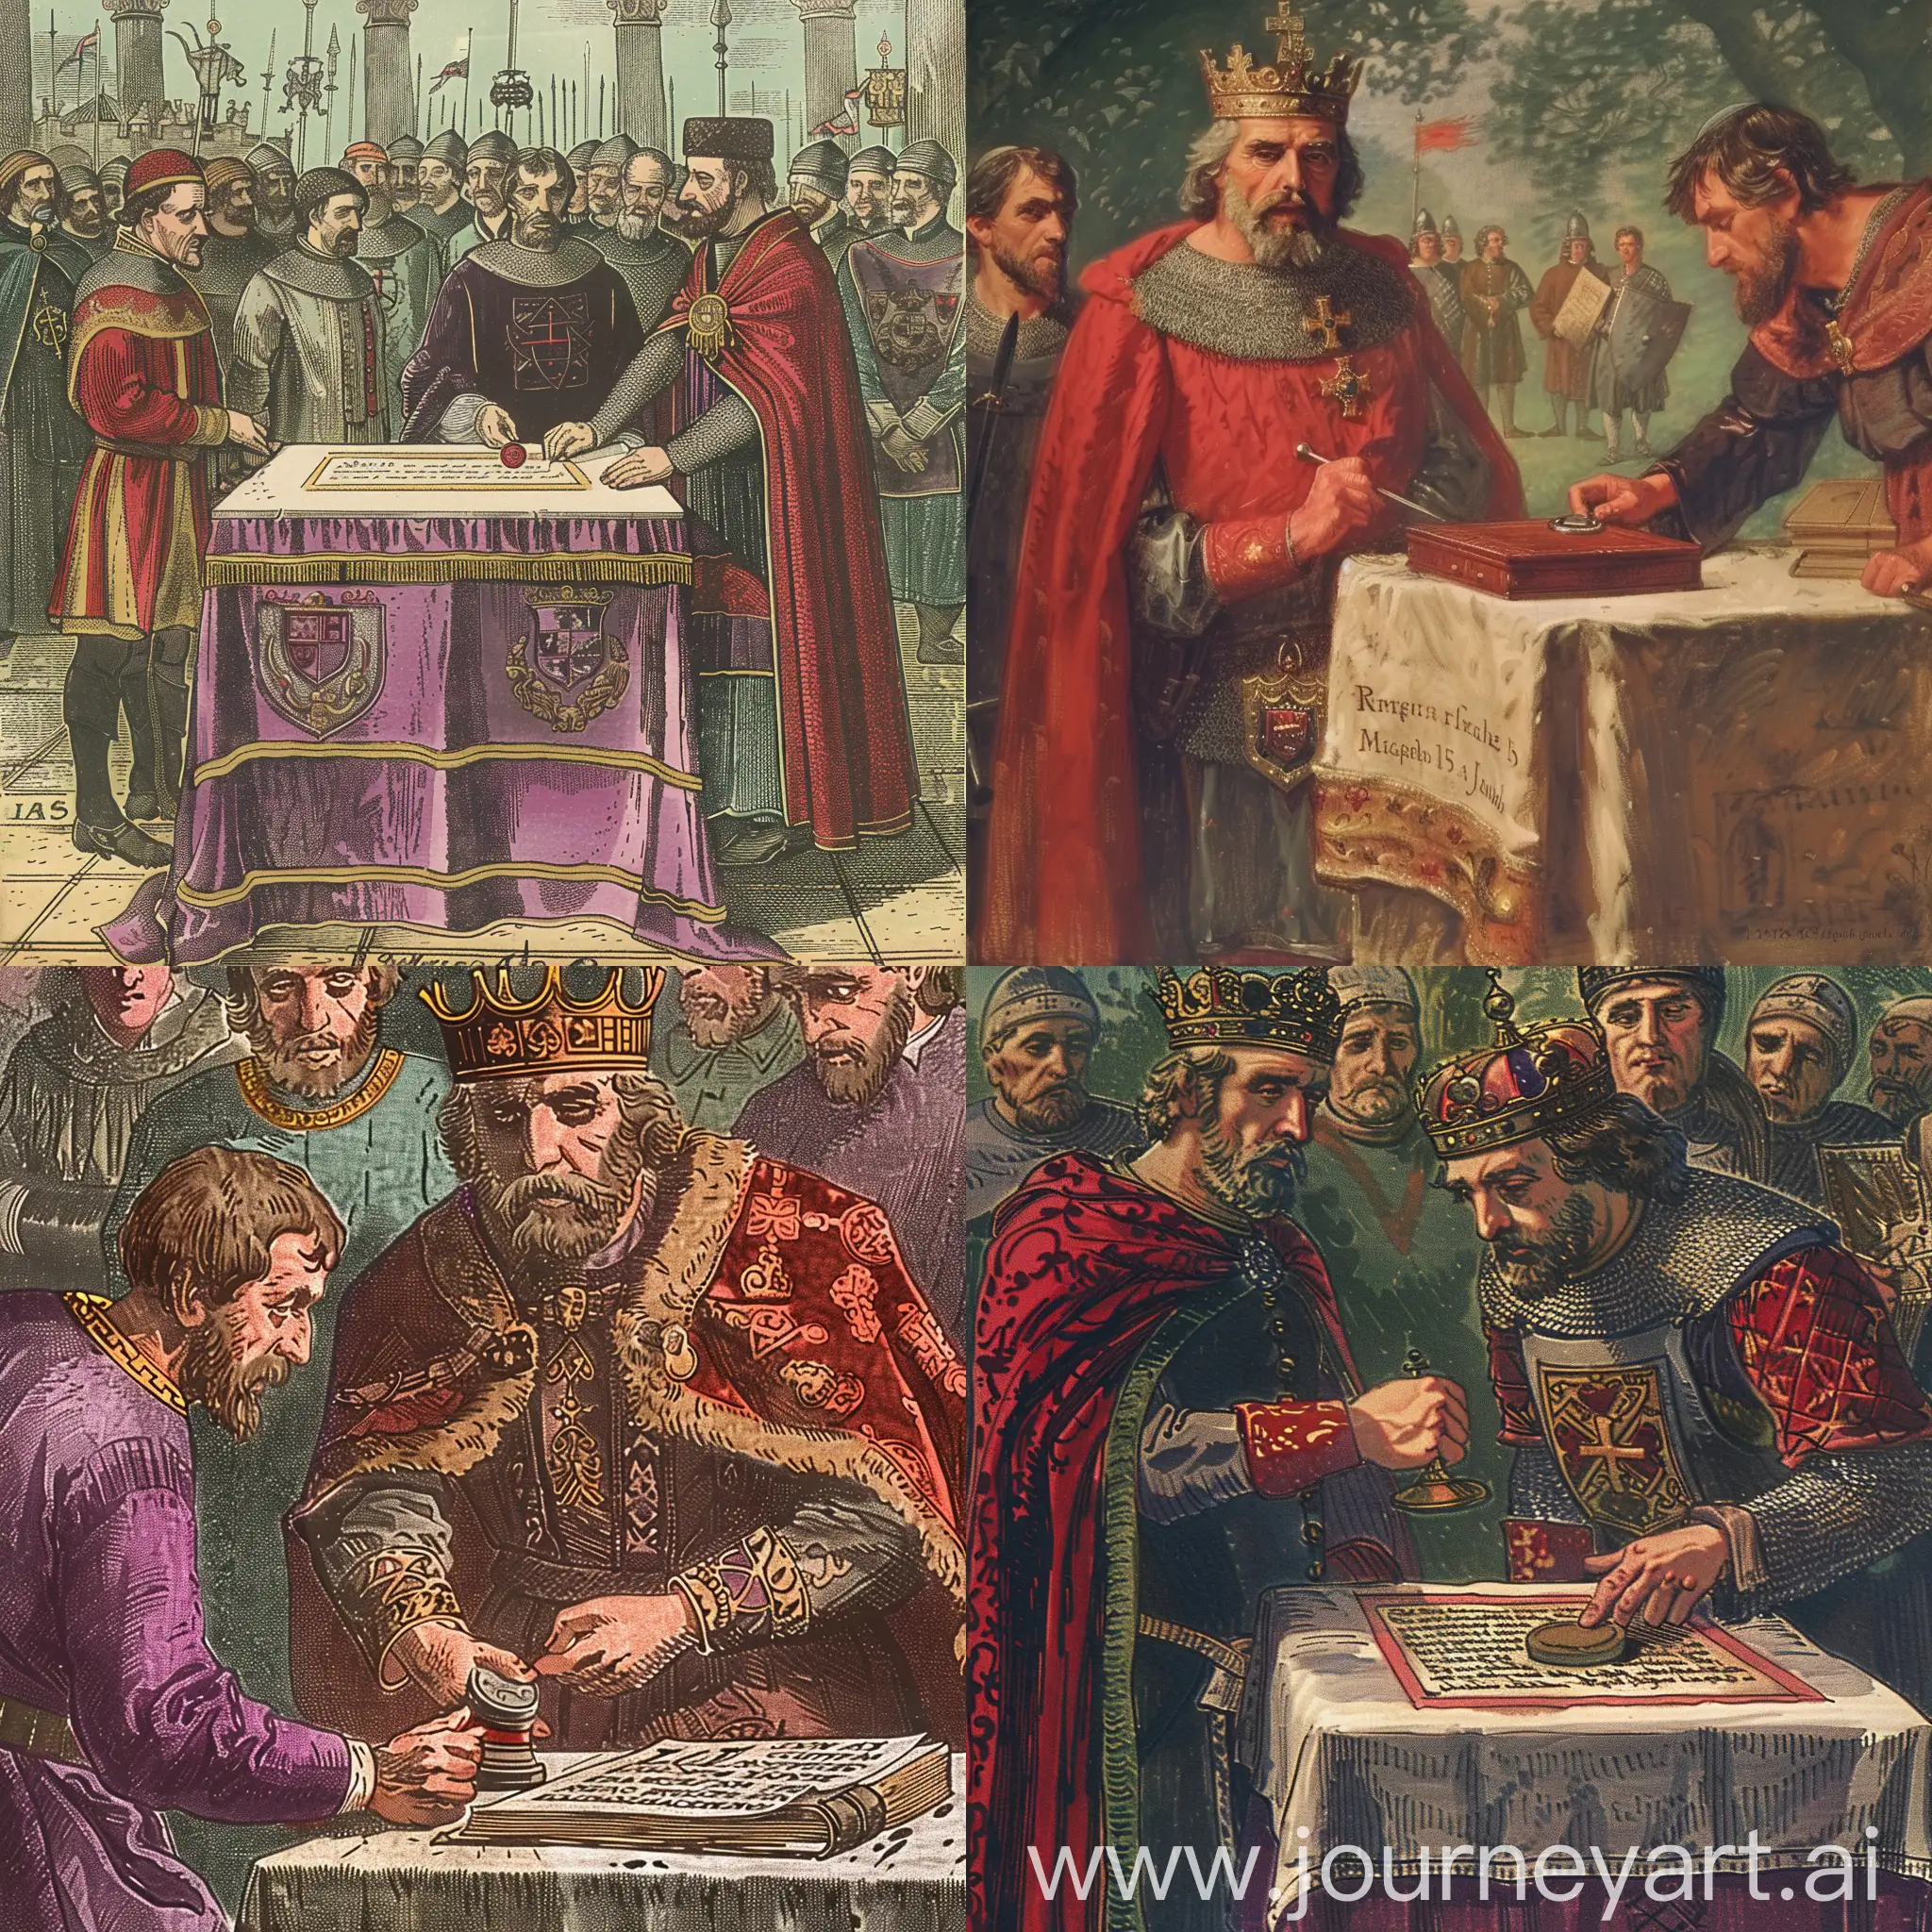 King-John-of-England-Signing-the-Magna-Carta-at-Runnymede